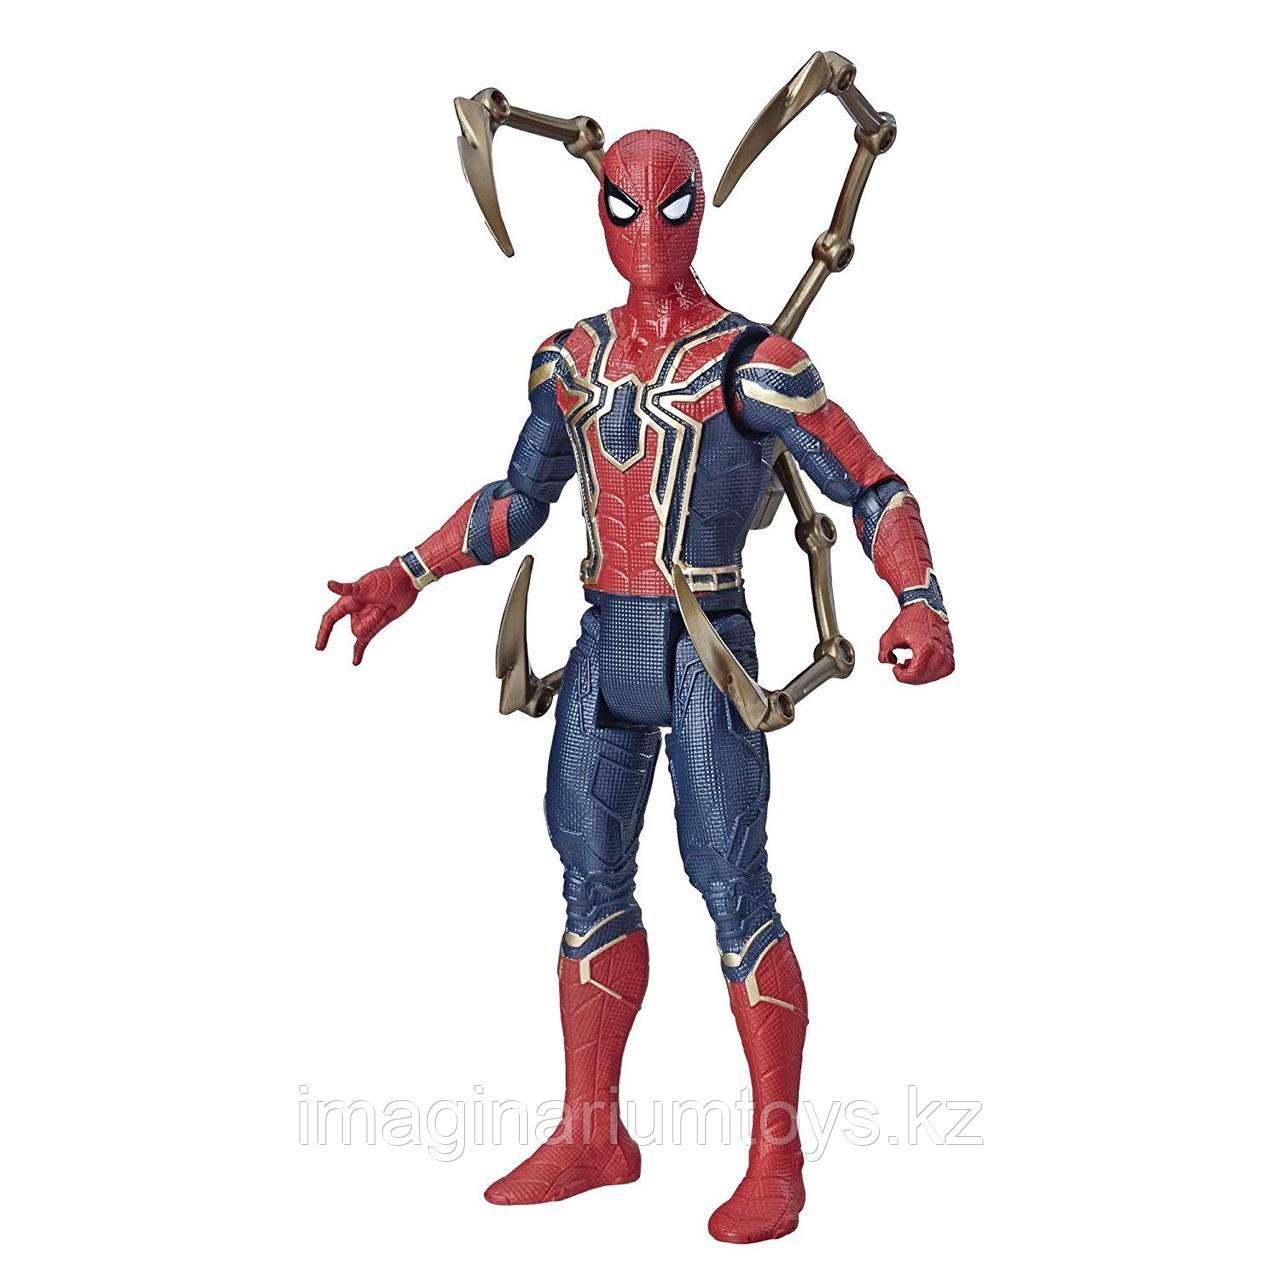 Фигурка Человек-паук Spiderman 15 см с аксессуаром